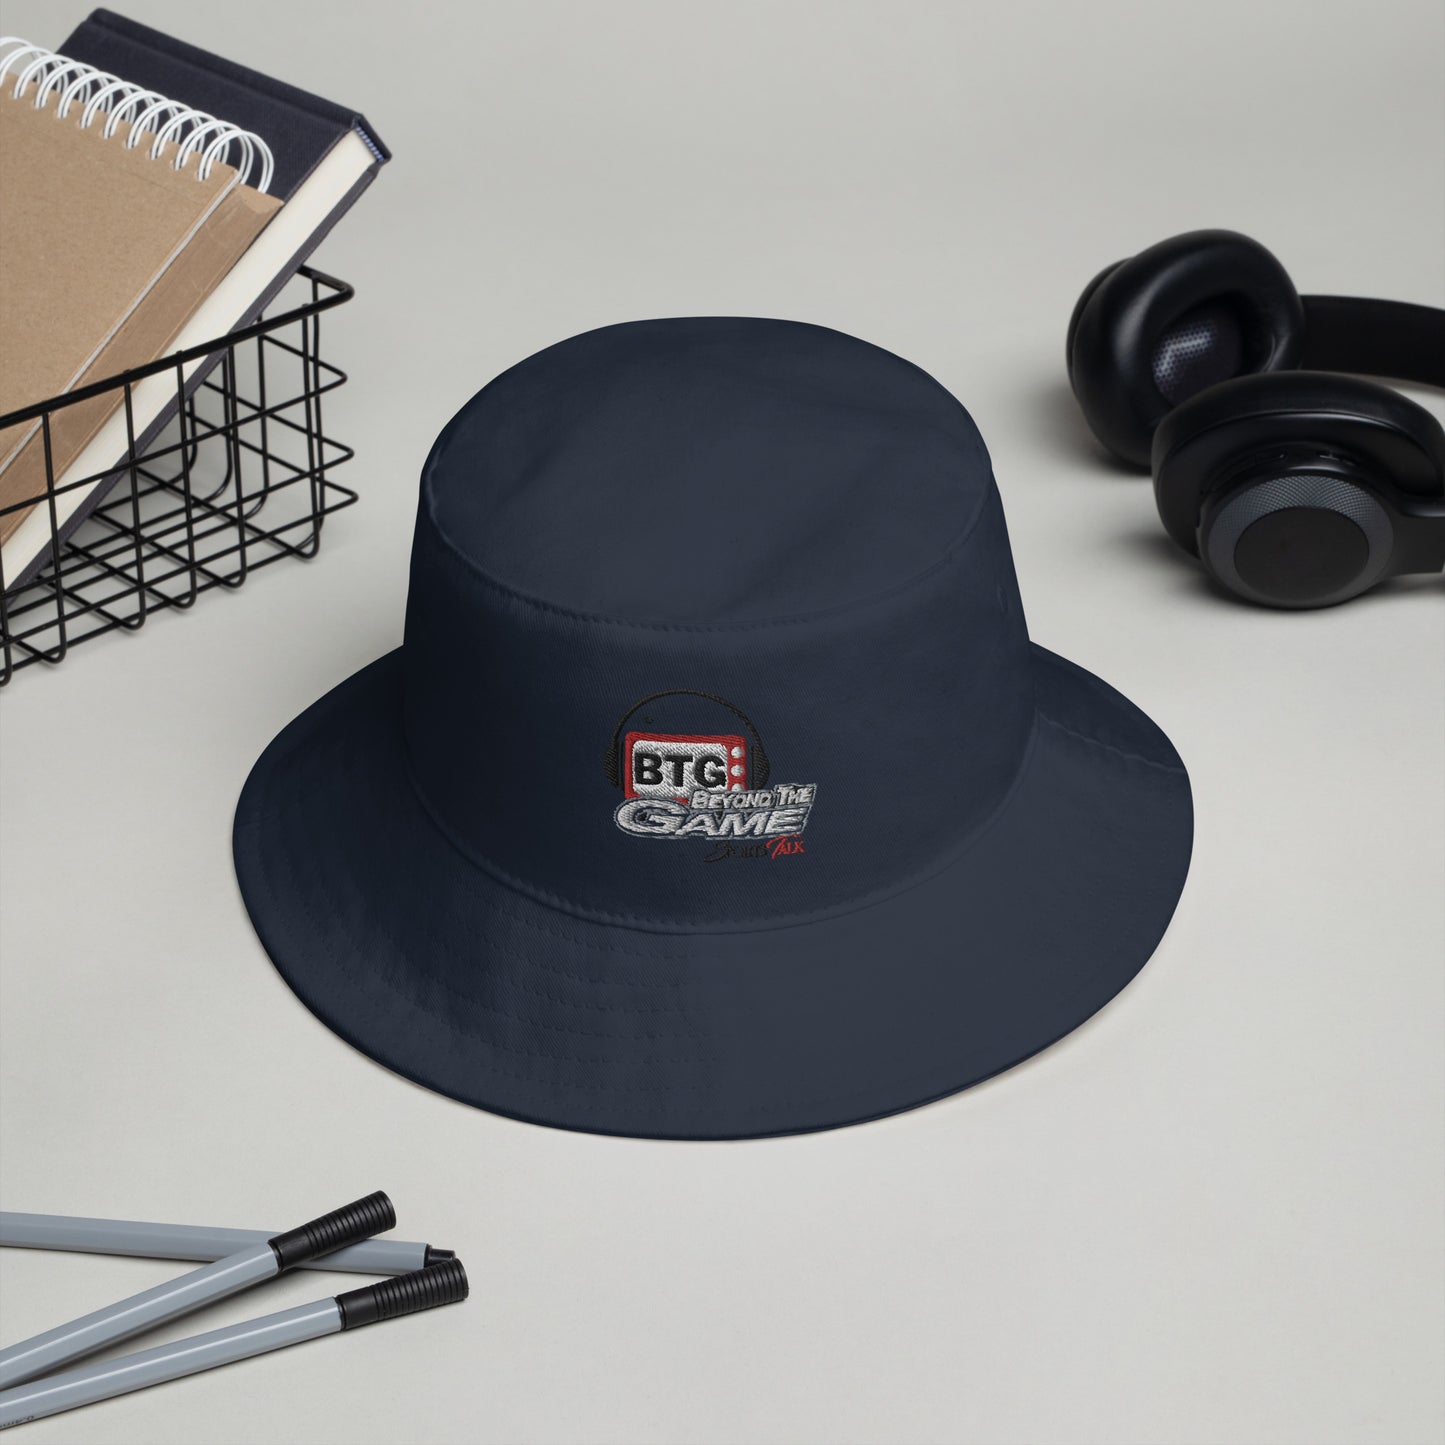 BTG Bucket Hat